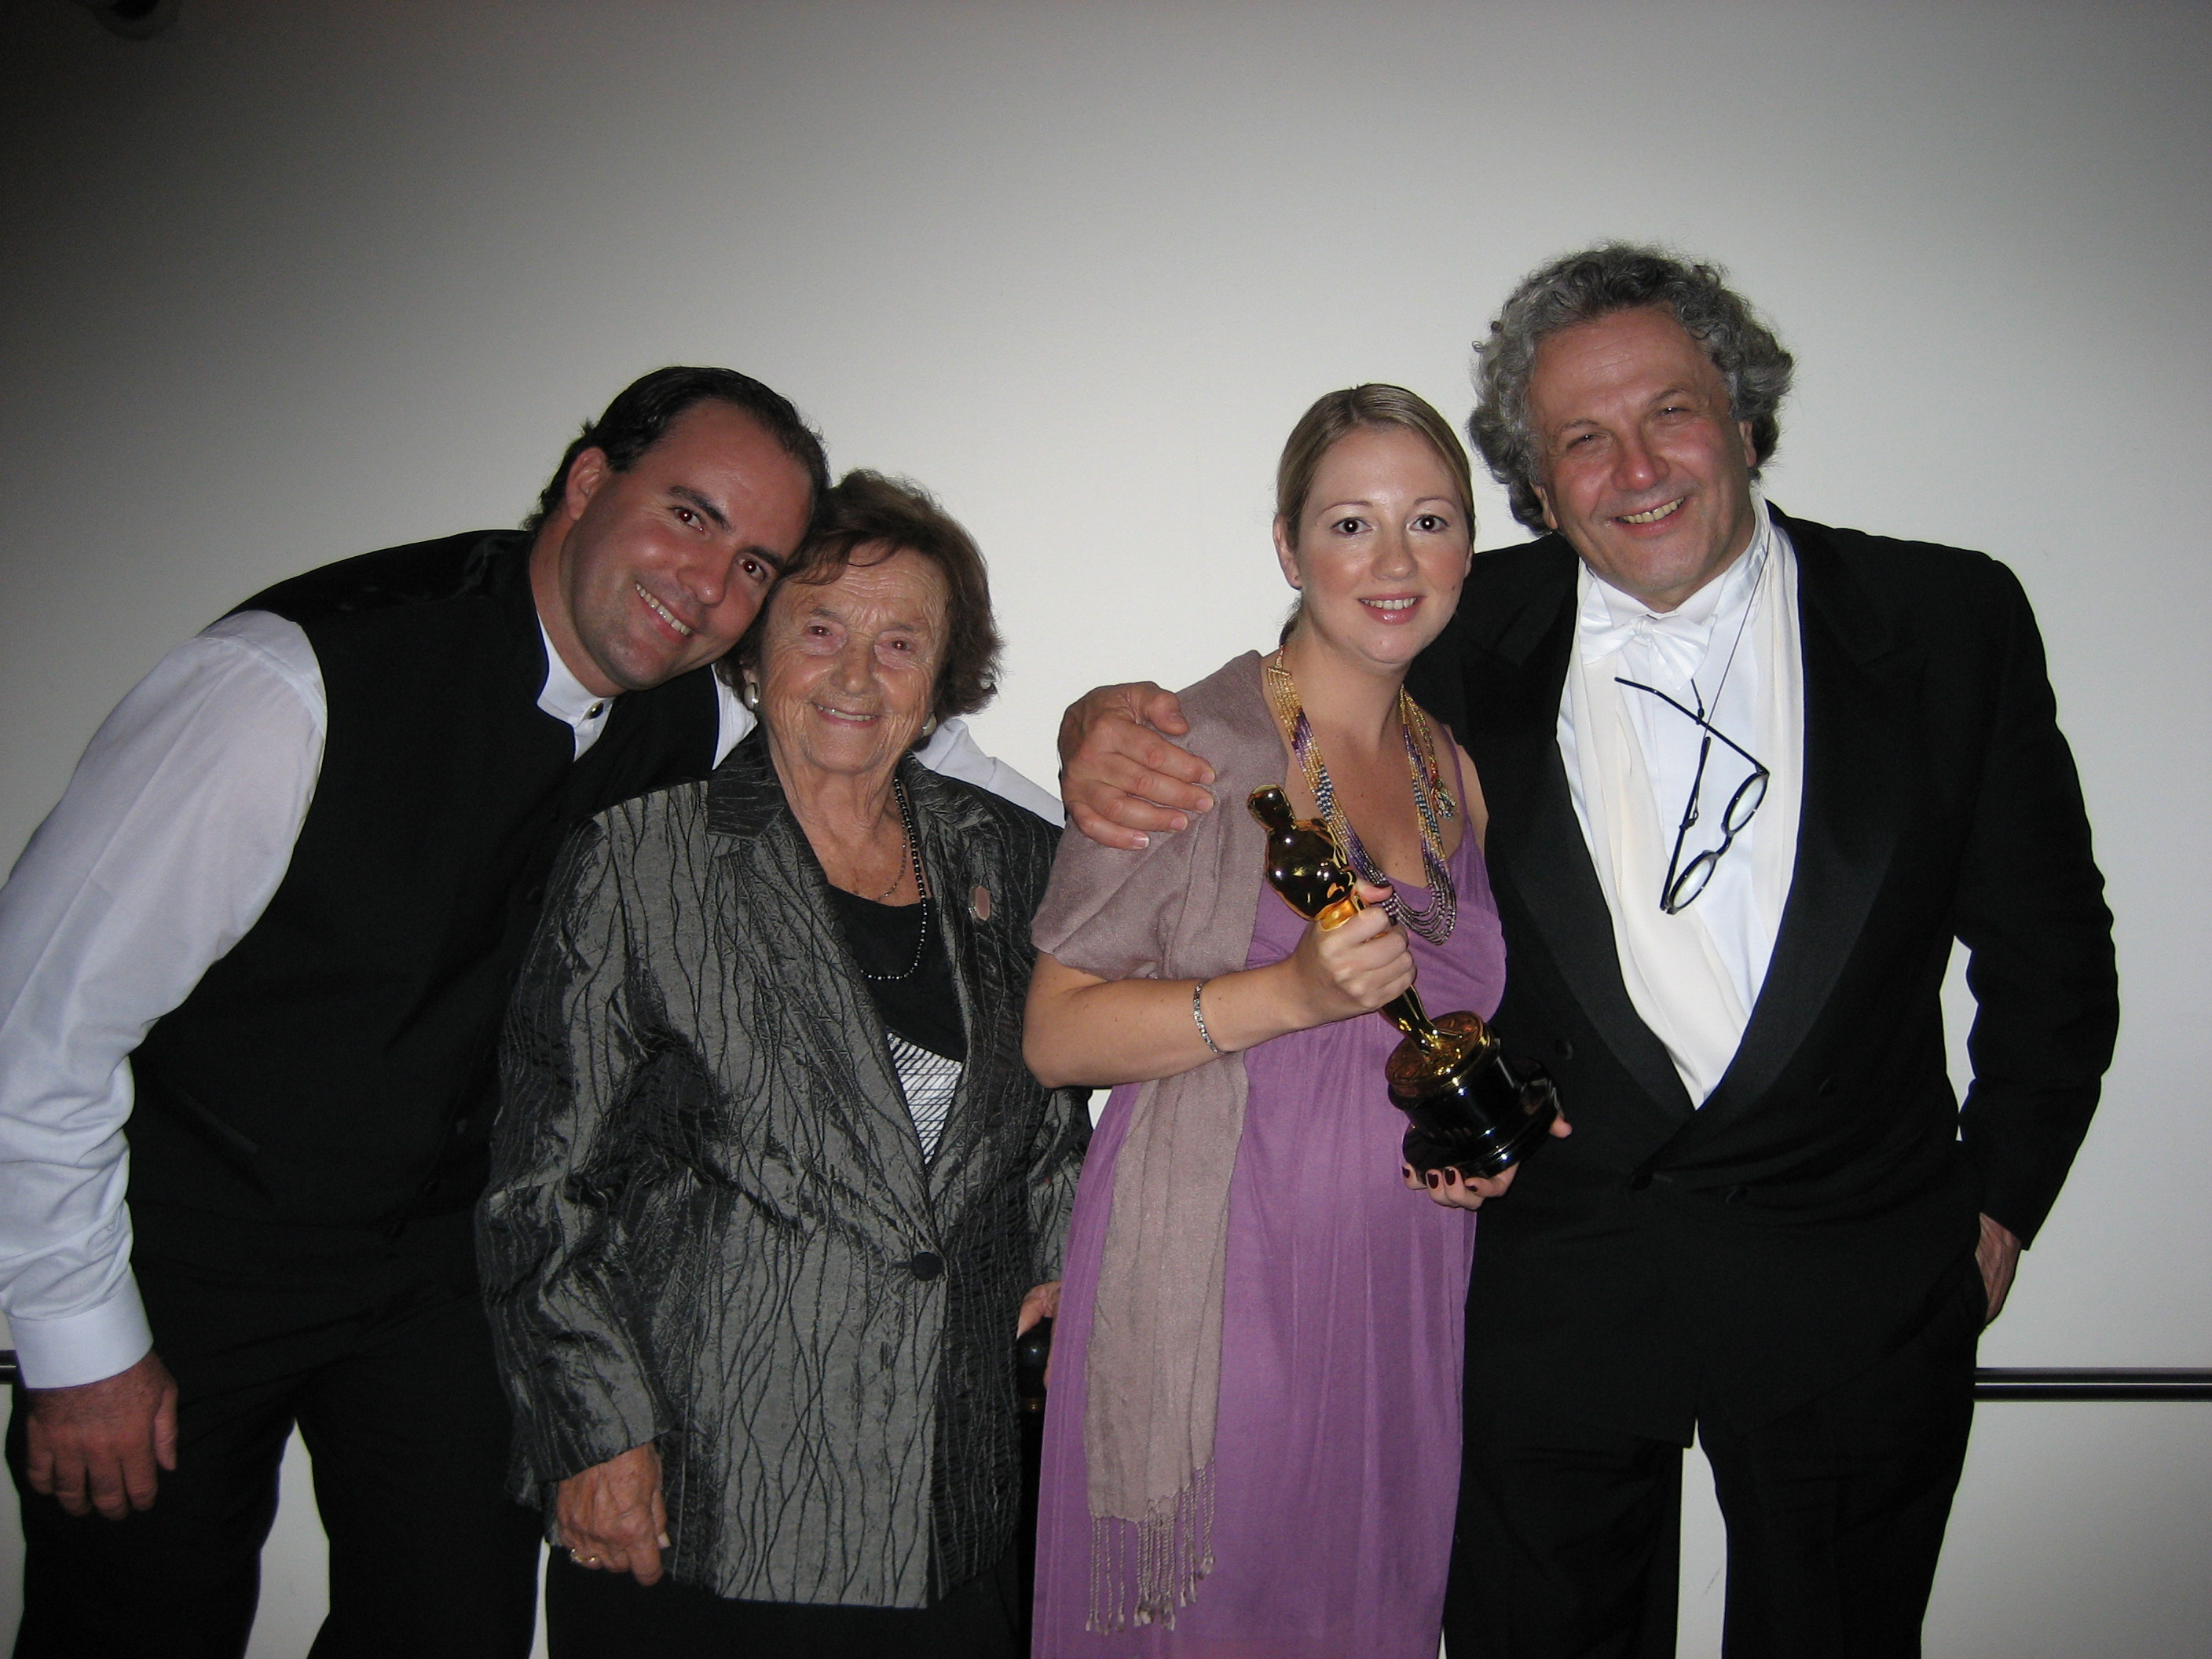 Greg Van Borssum, Angela Miller, Debbie-Lee Van Borssum & George Miller at the Happy Feet Academy Party